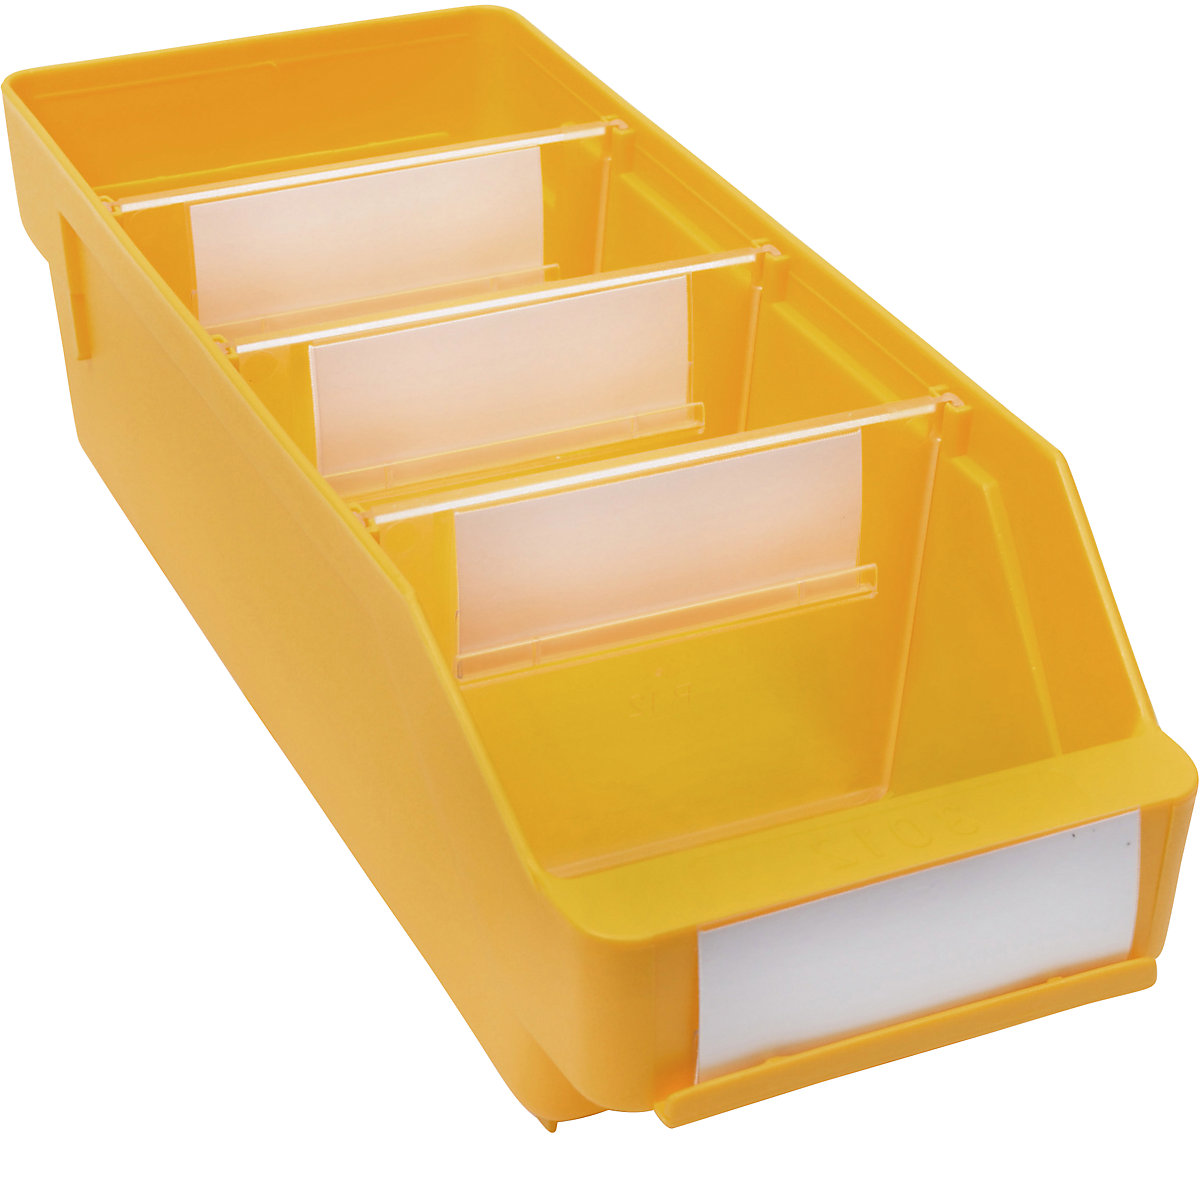 Kutija za regale od polipropilena otpornog na udarce – STEMO, u žutoj boji, DxŠxV 300 x 118 x 95 mm, pak. 30 kom.-8